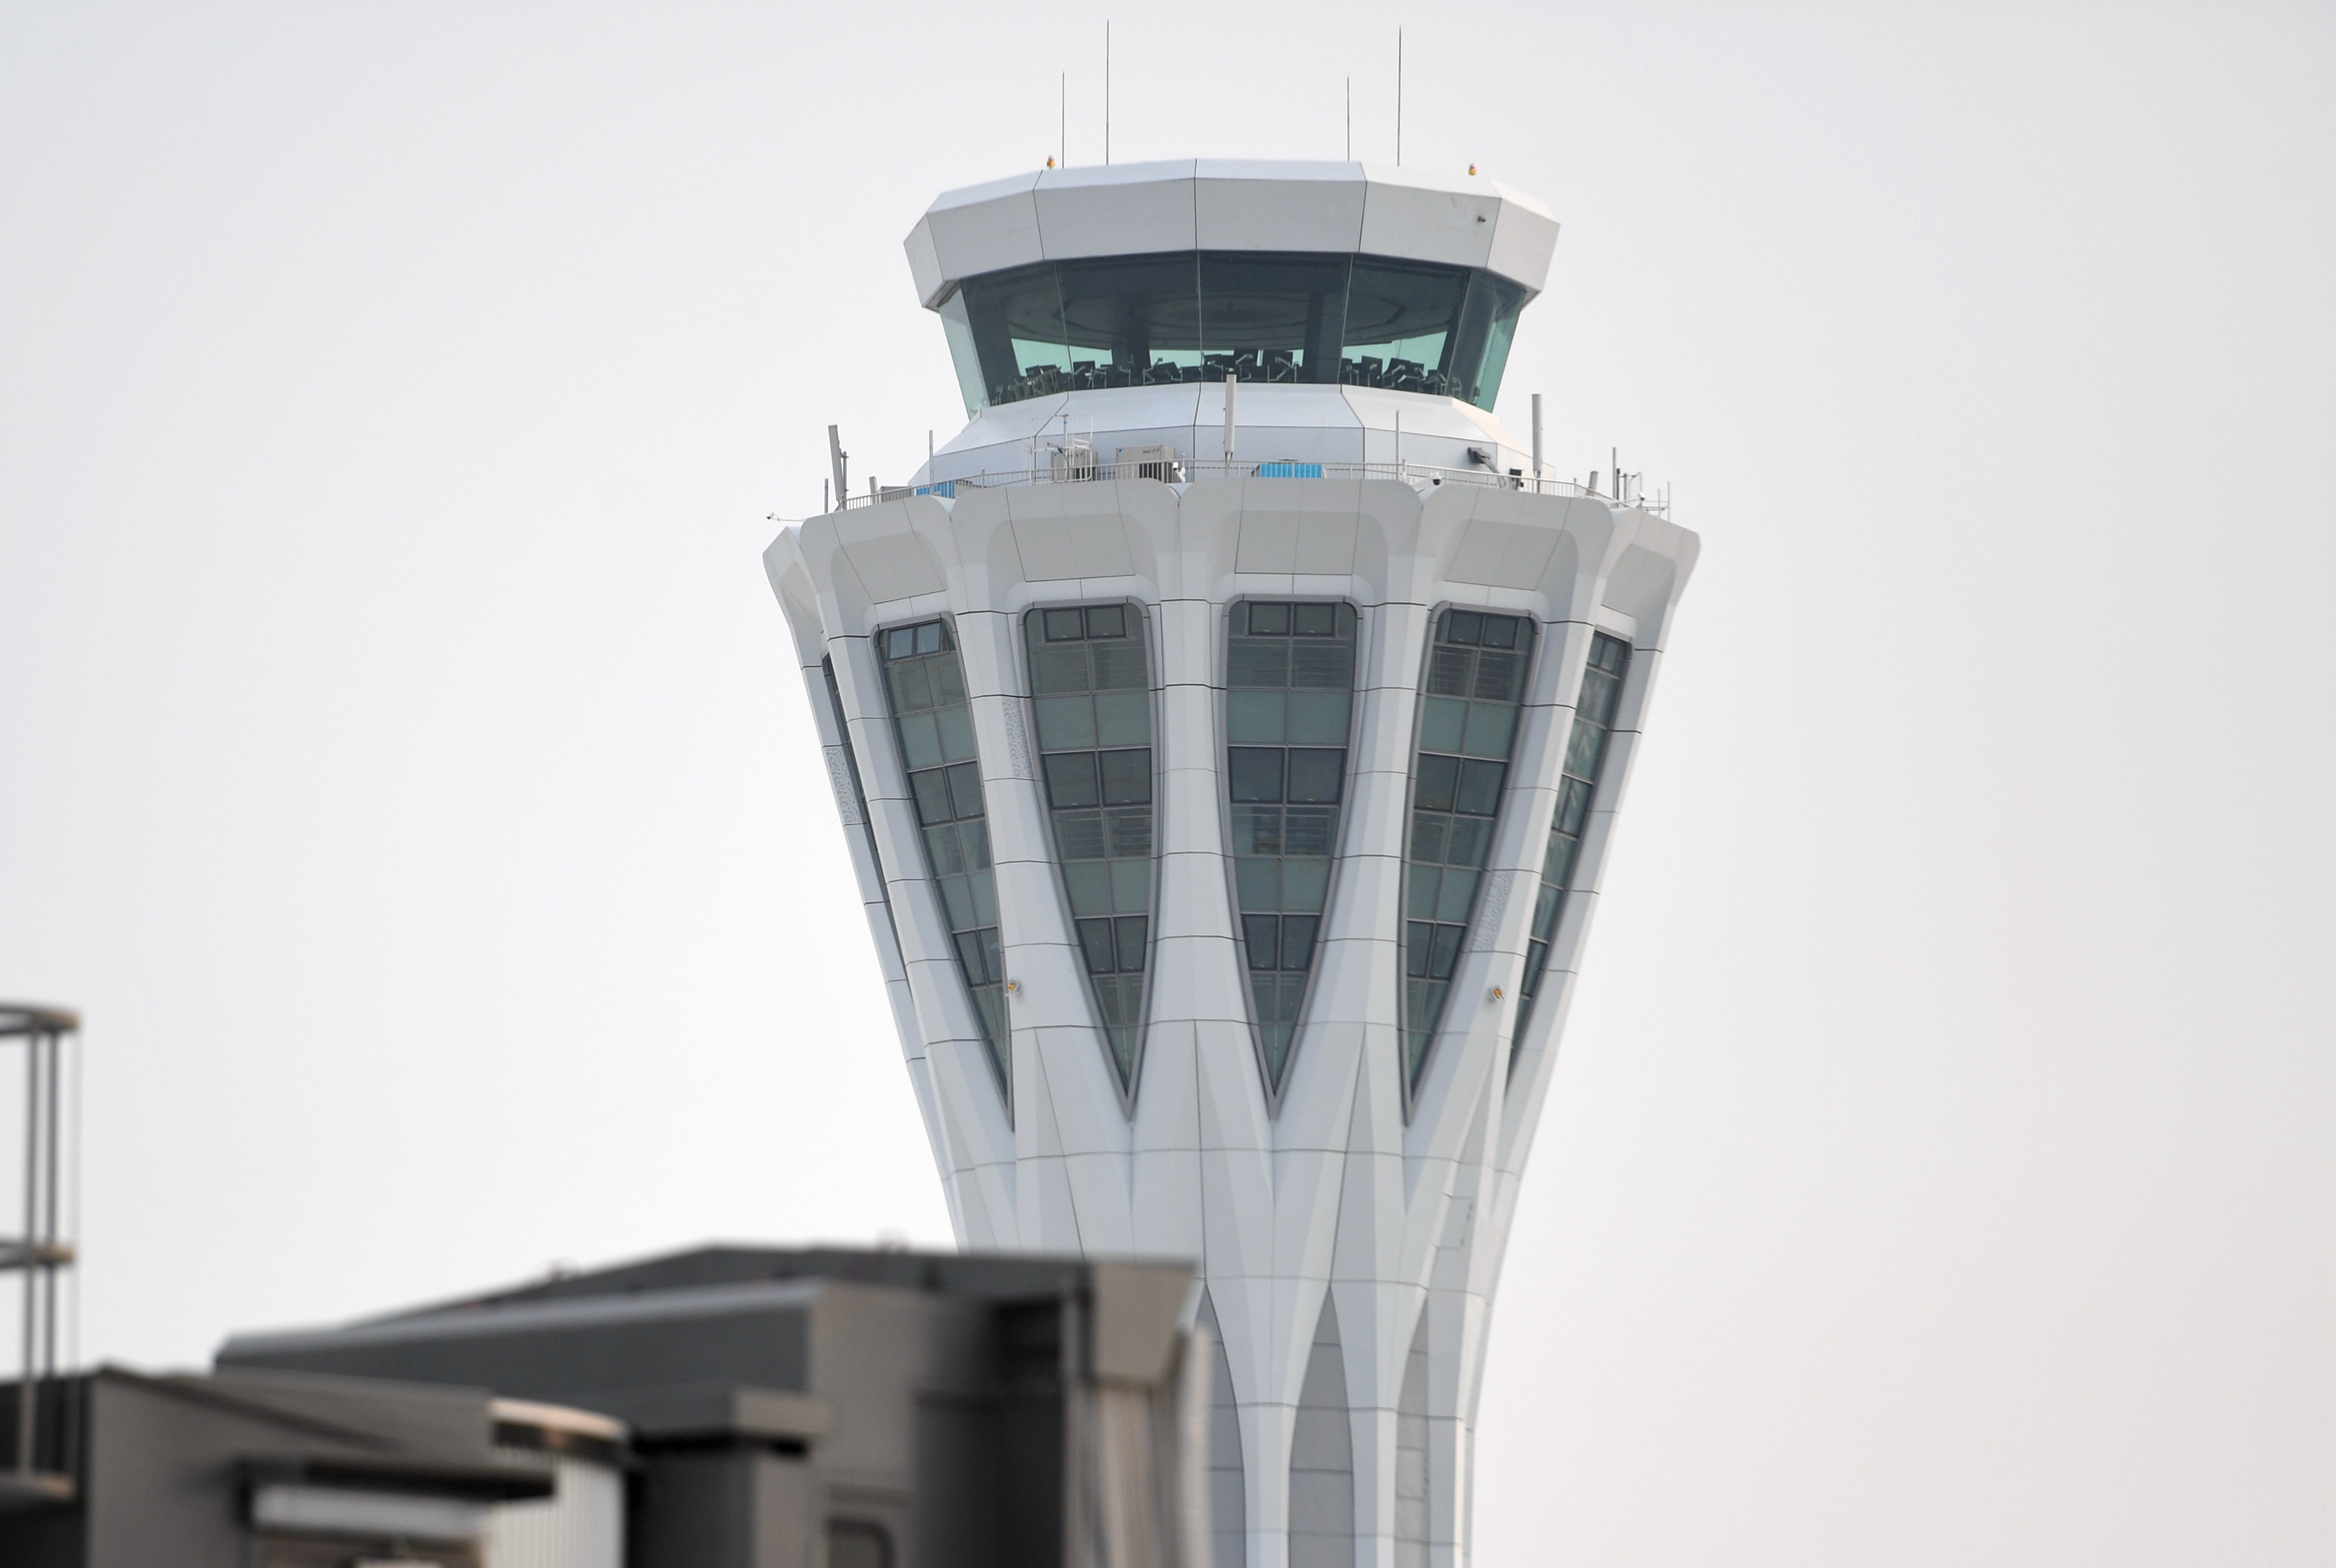 北京大兴国际机场外观图片